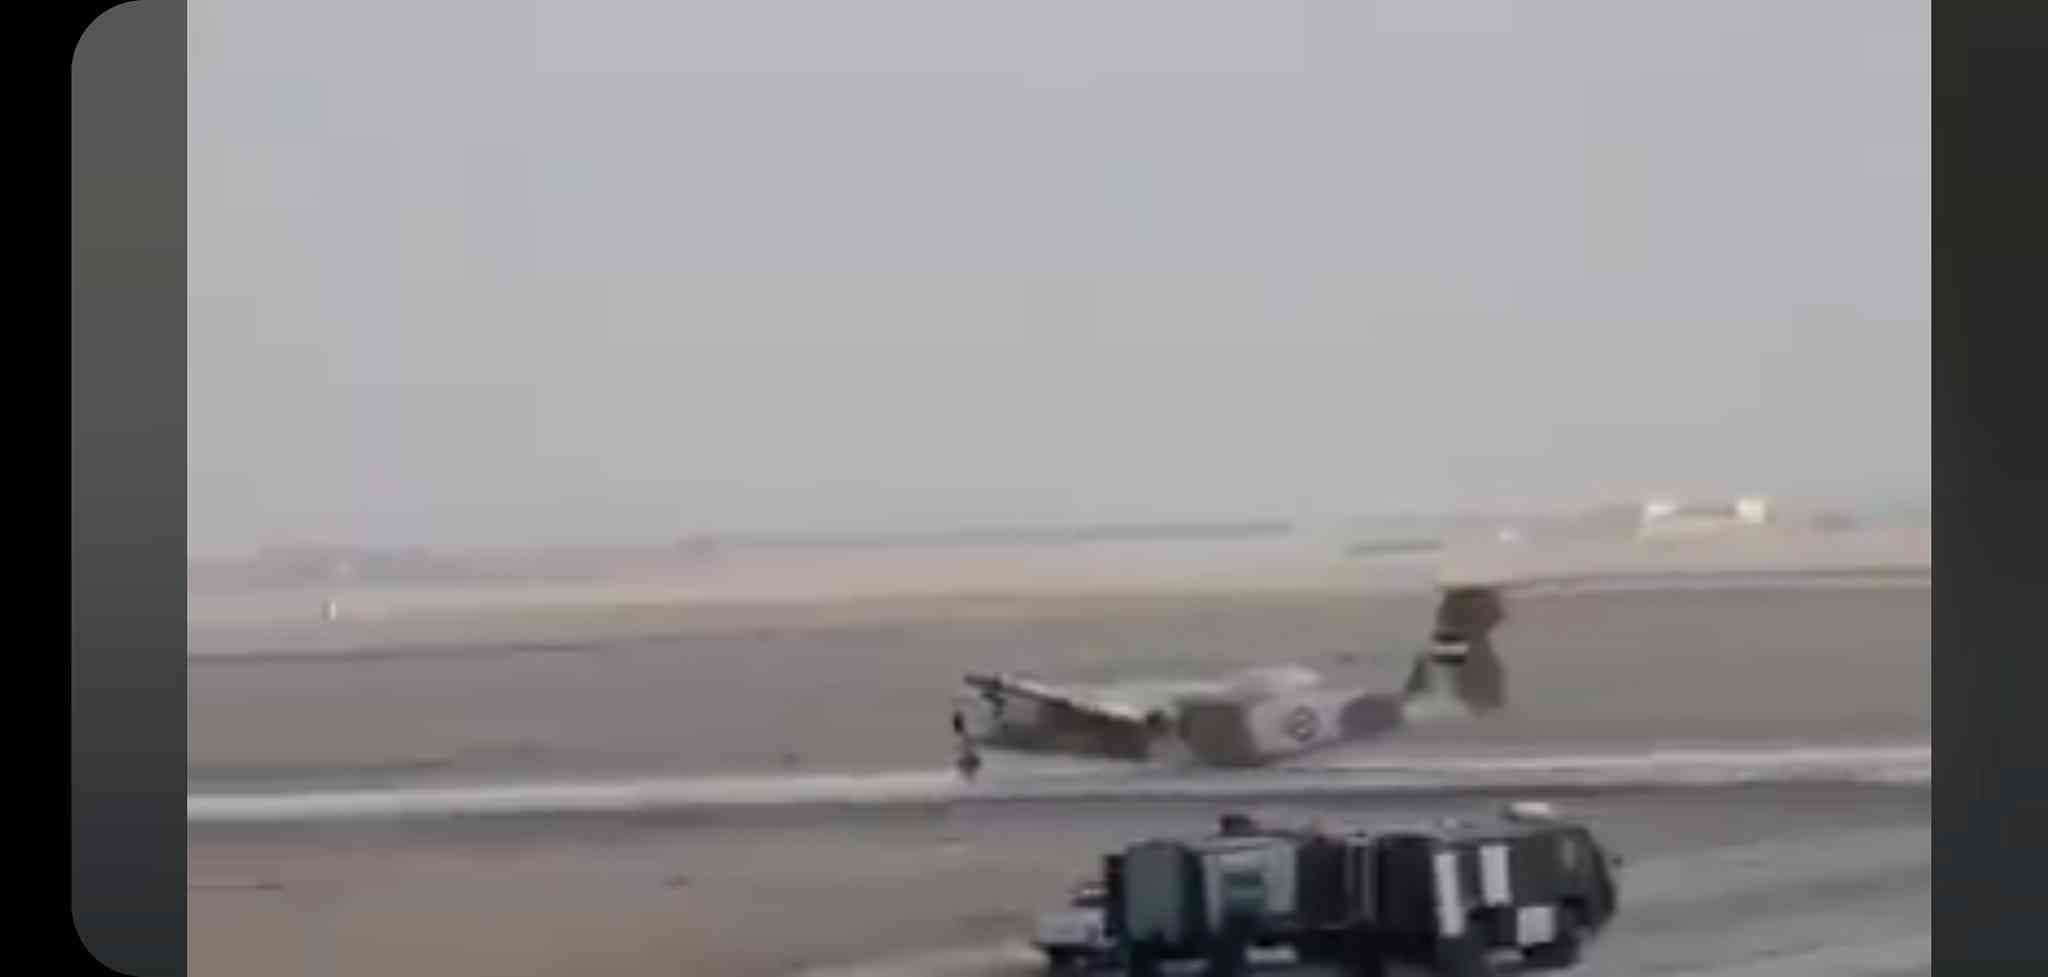 لقطات توضح براعة الطيار المصري أثناء هبوط اضطراري بالعجلة الأمامية فقط لطائرة DHC-5 Buffalo